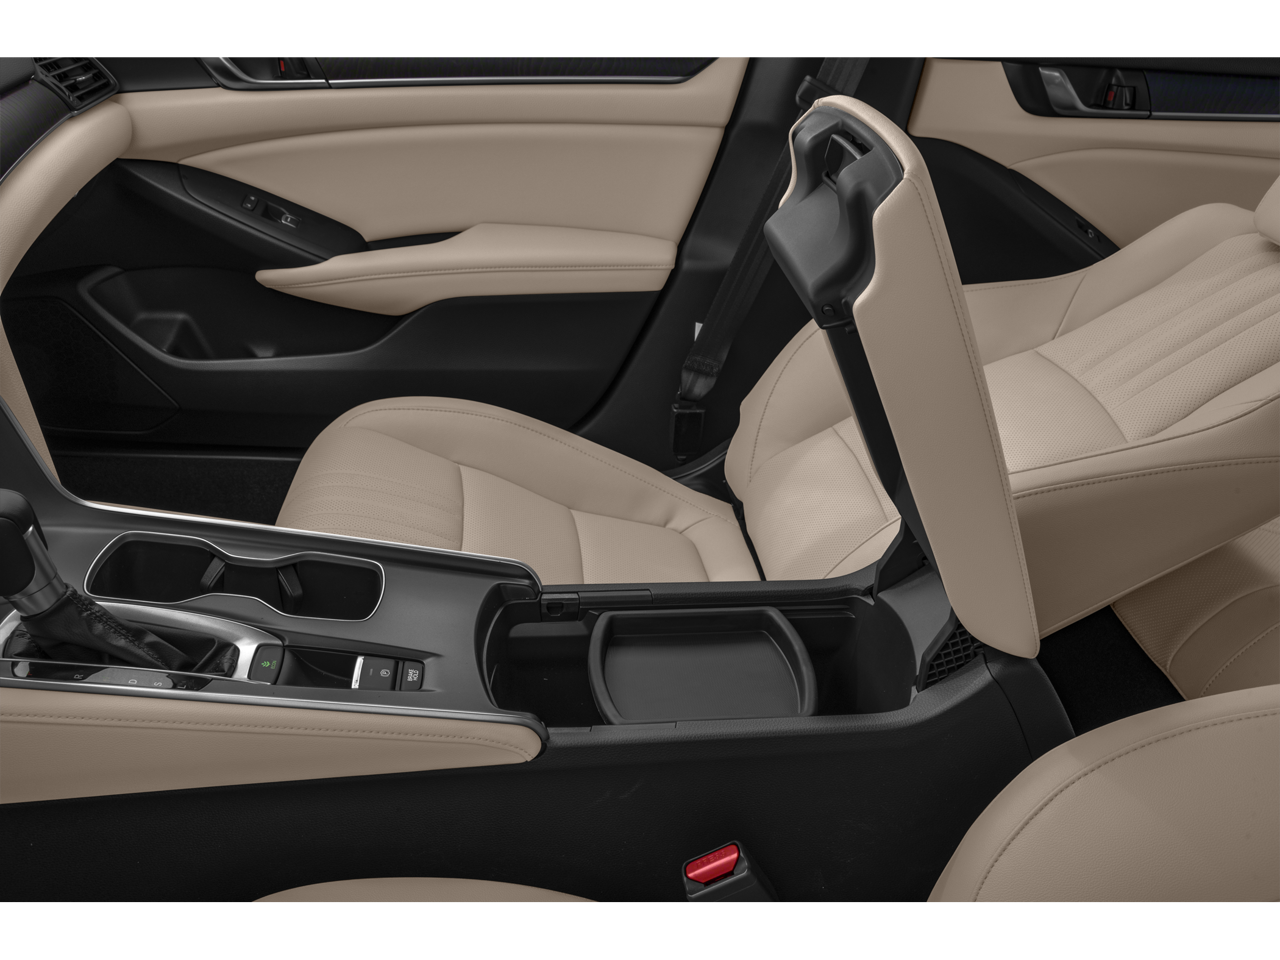 2019 Honda Accord Sedan EX-L 1.5T